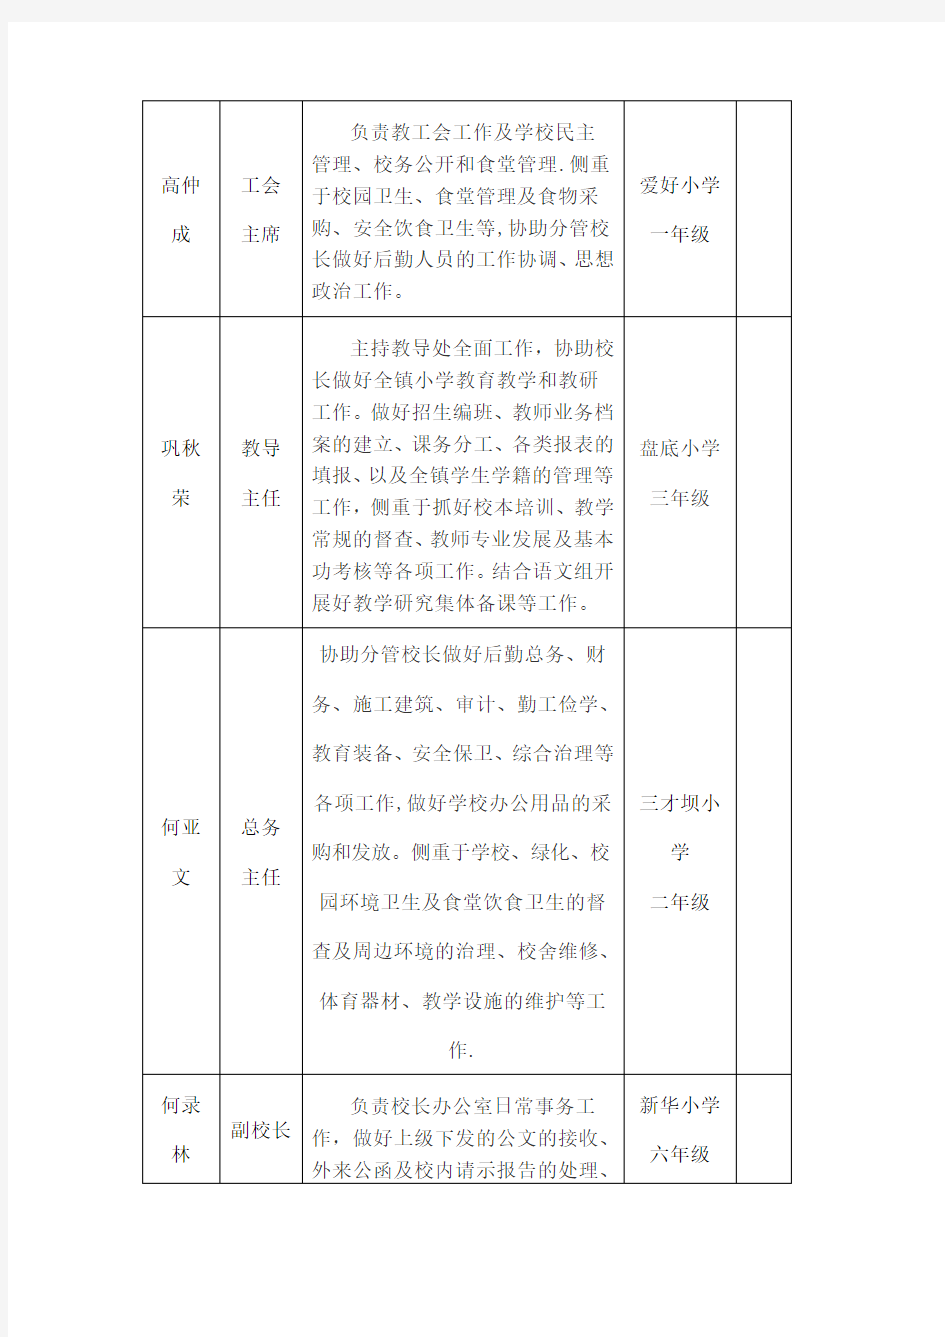 洛塘中心小学领导班子成员分工情况一览表